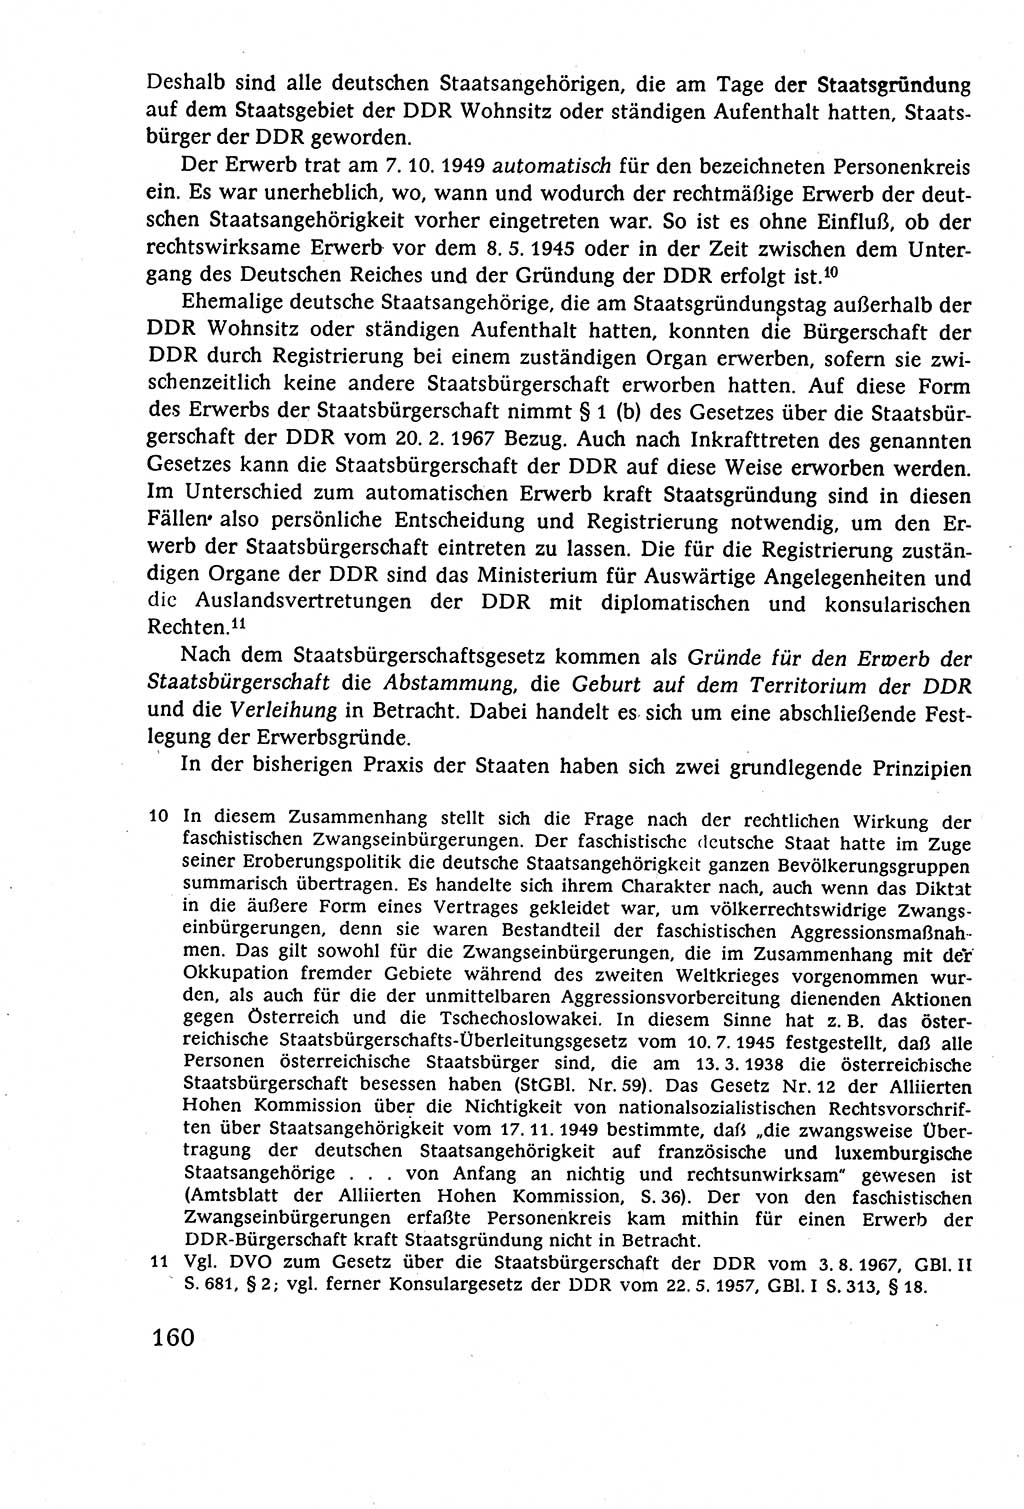 Staatsrecht der DDR (Deutsche Demokratische Republik), Lehrbuch 1977, Seite 160 (St.-R. DDR Lb. 1977, S. 160)